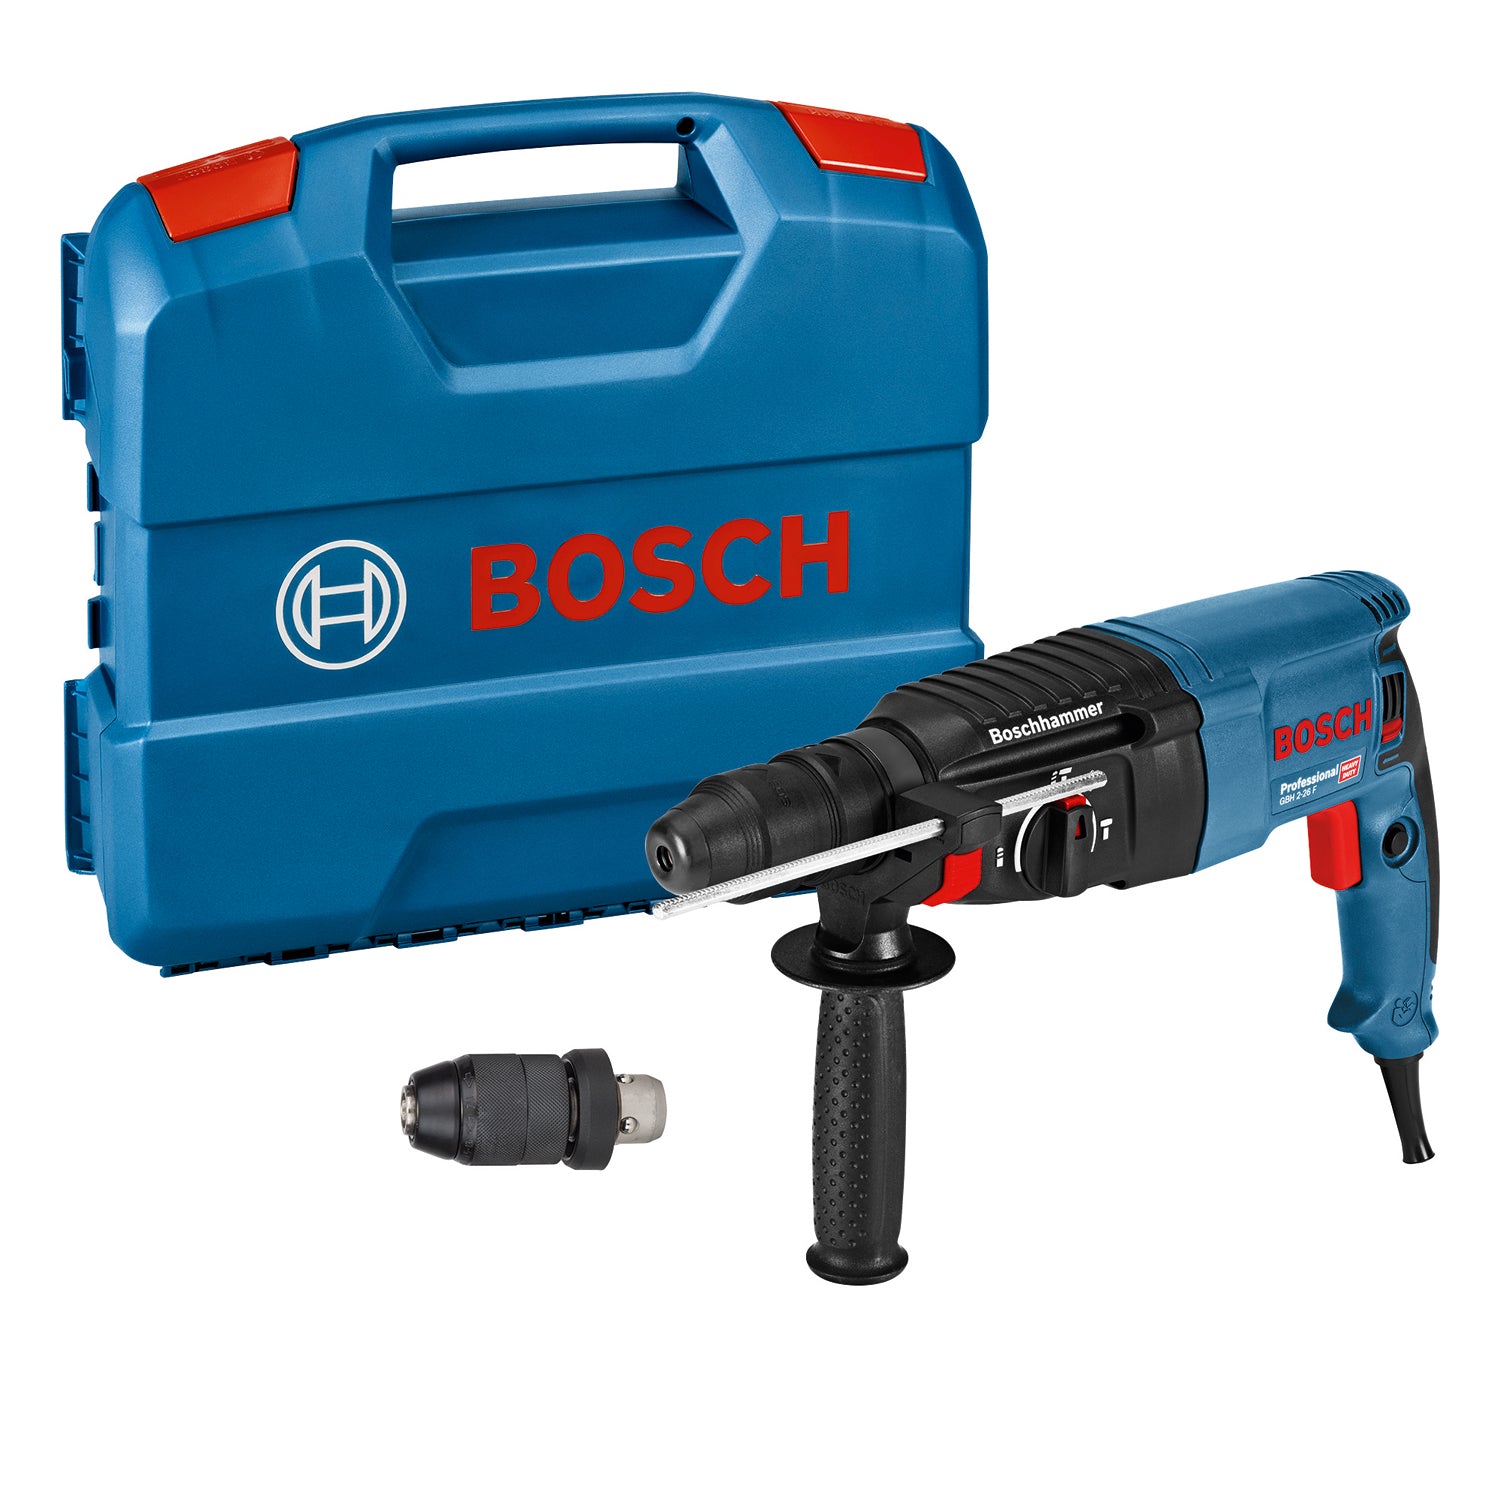 Bosch Professional GBH 2-26 F Bohrhammer 2.7 Joule mit Schnellspannbohrfutter im L-Case